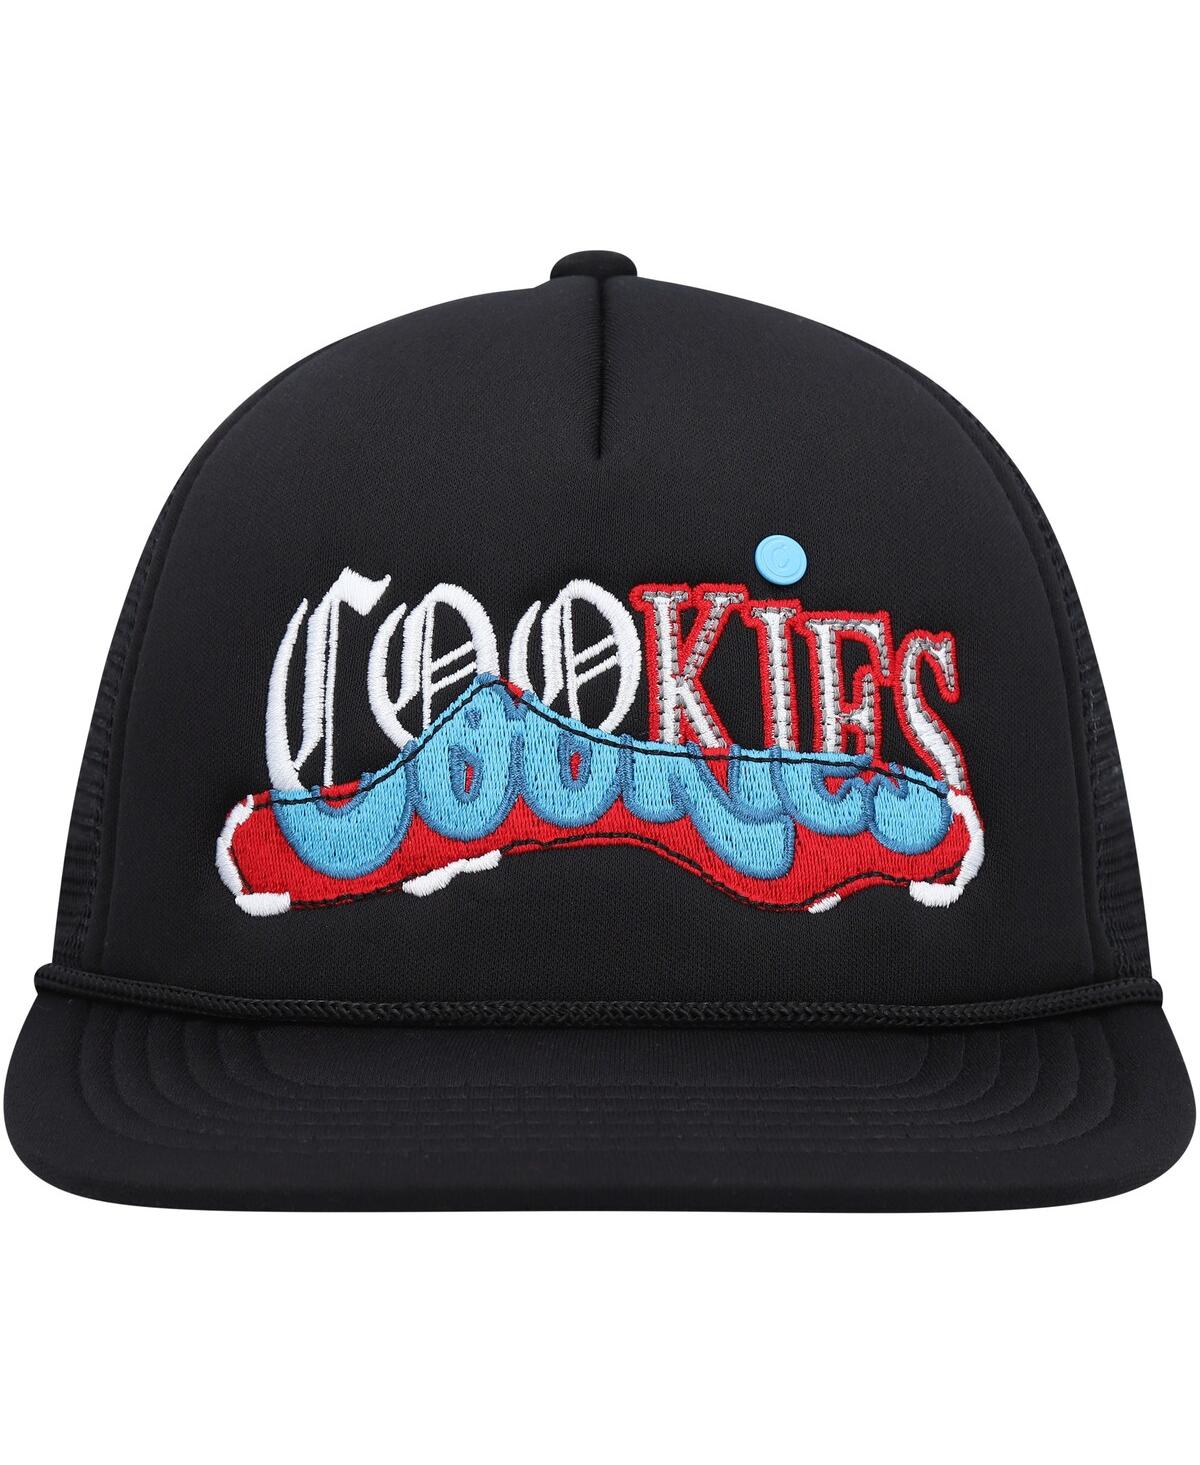 Shop Cookies Men's  Black Upper Echelon Trucker Snapback Hat